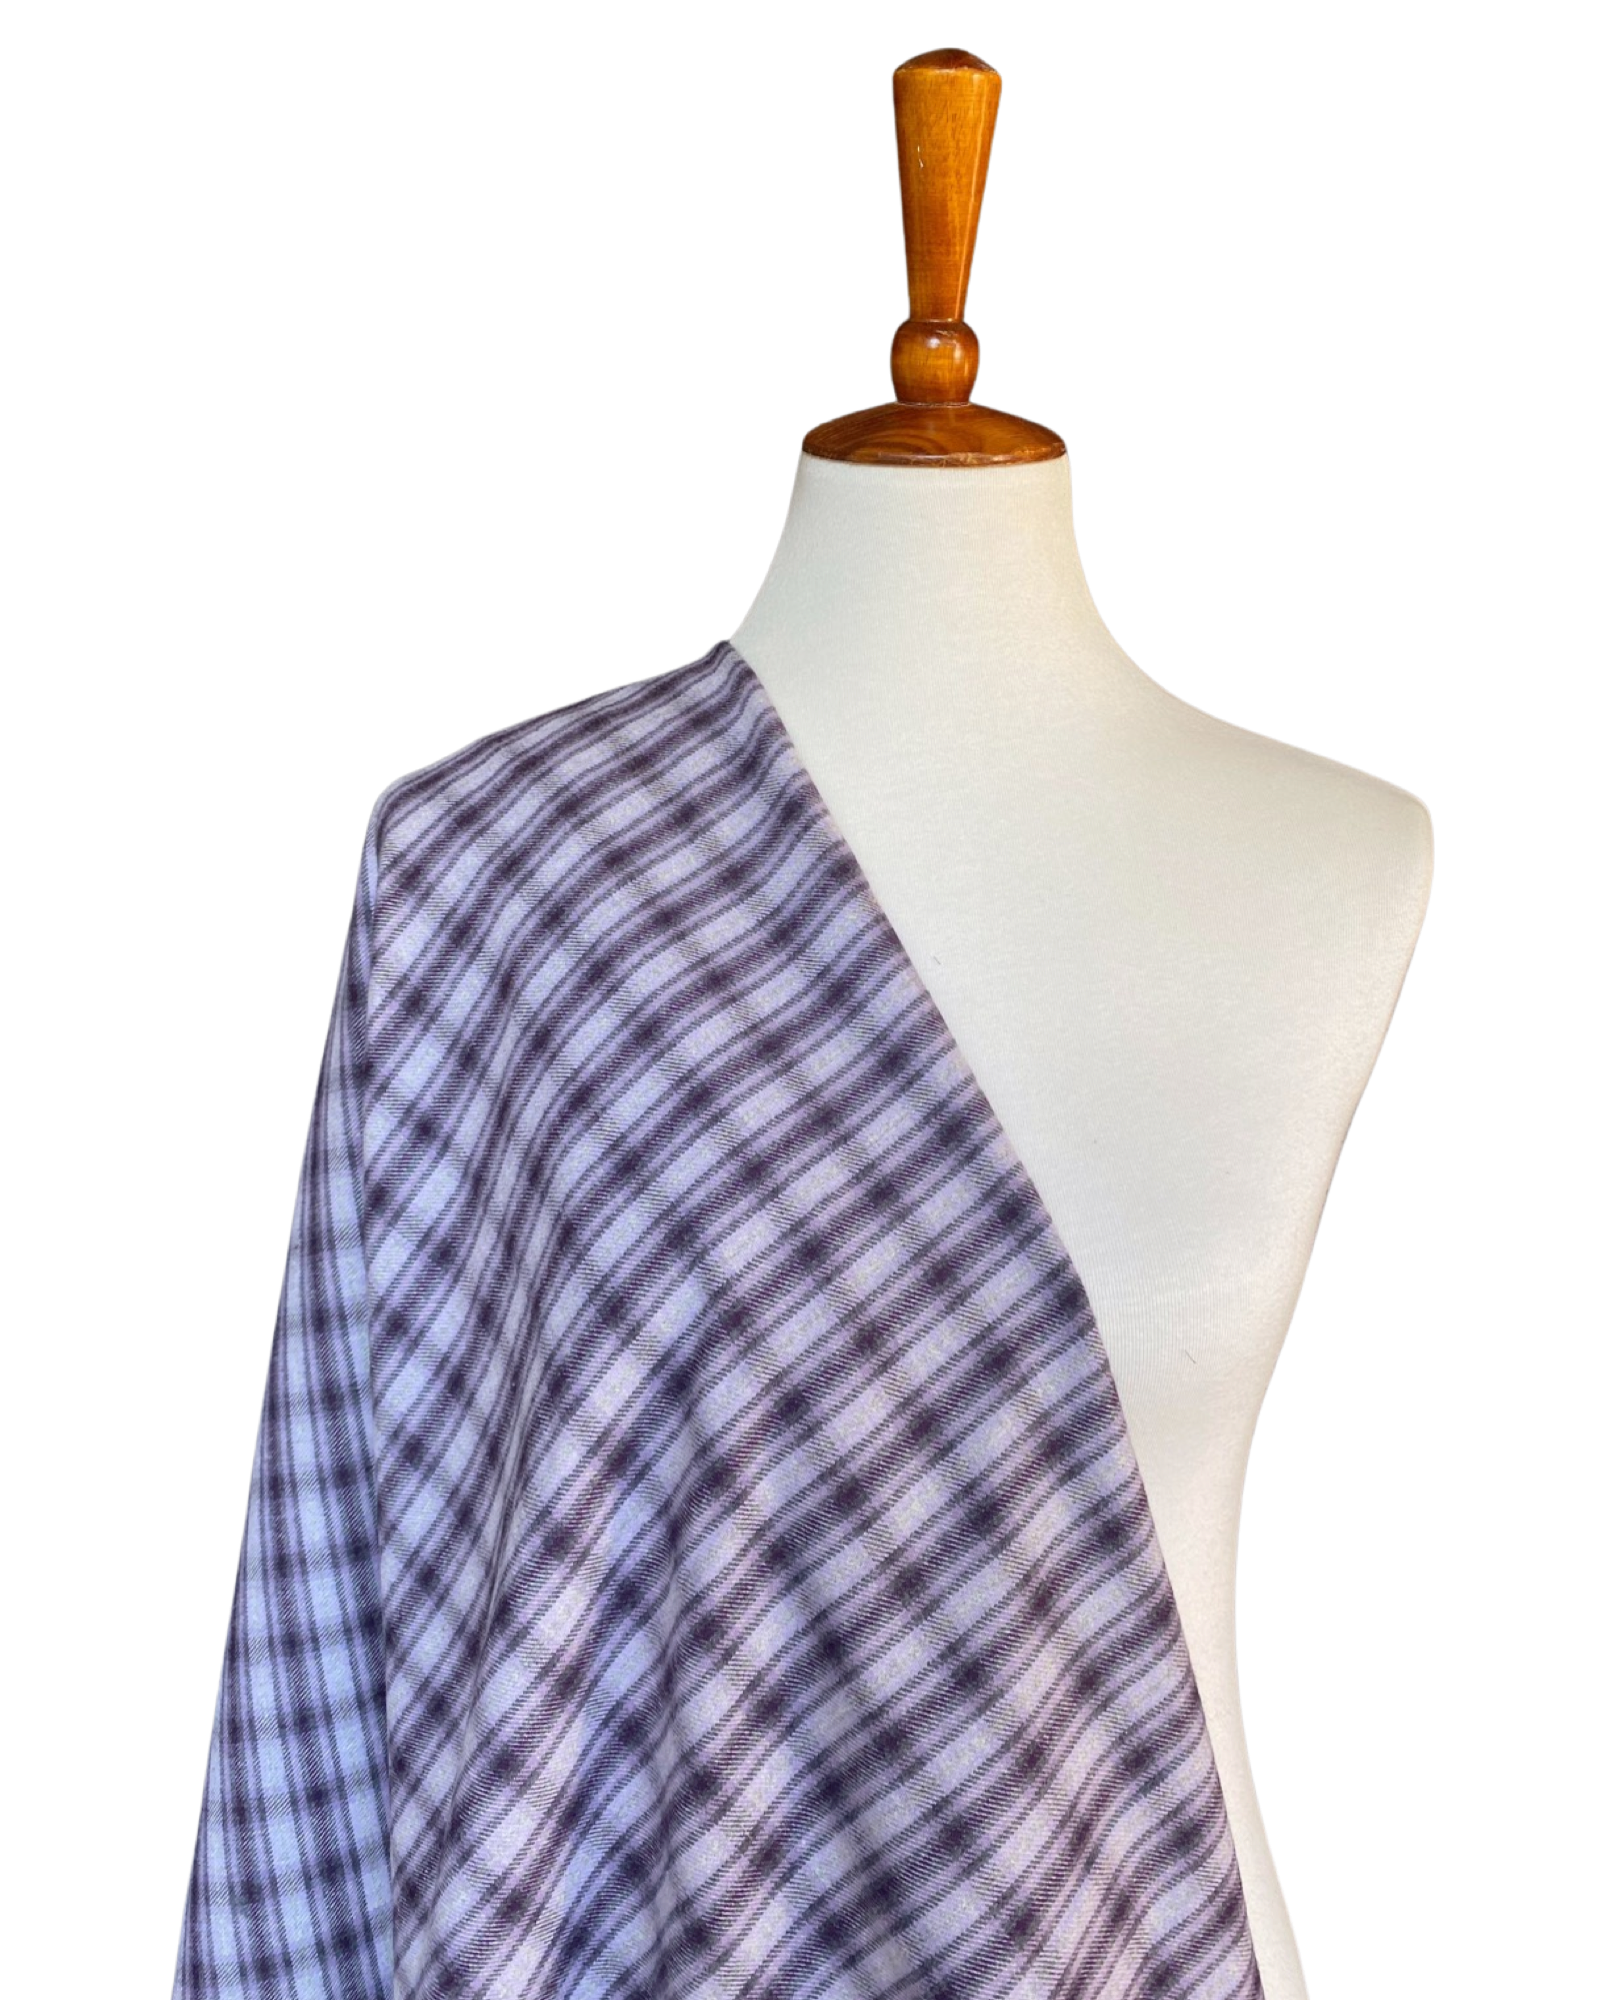 Medium Weight Grey/ Lavender Plaid Cotton Flannel